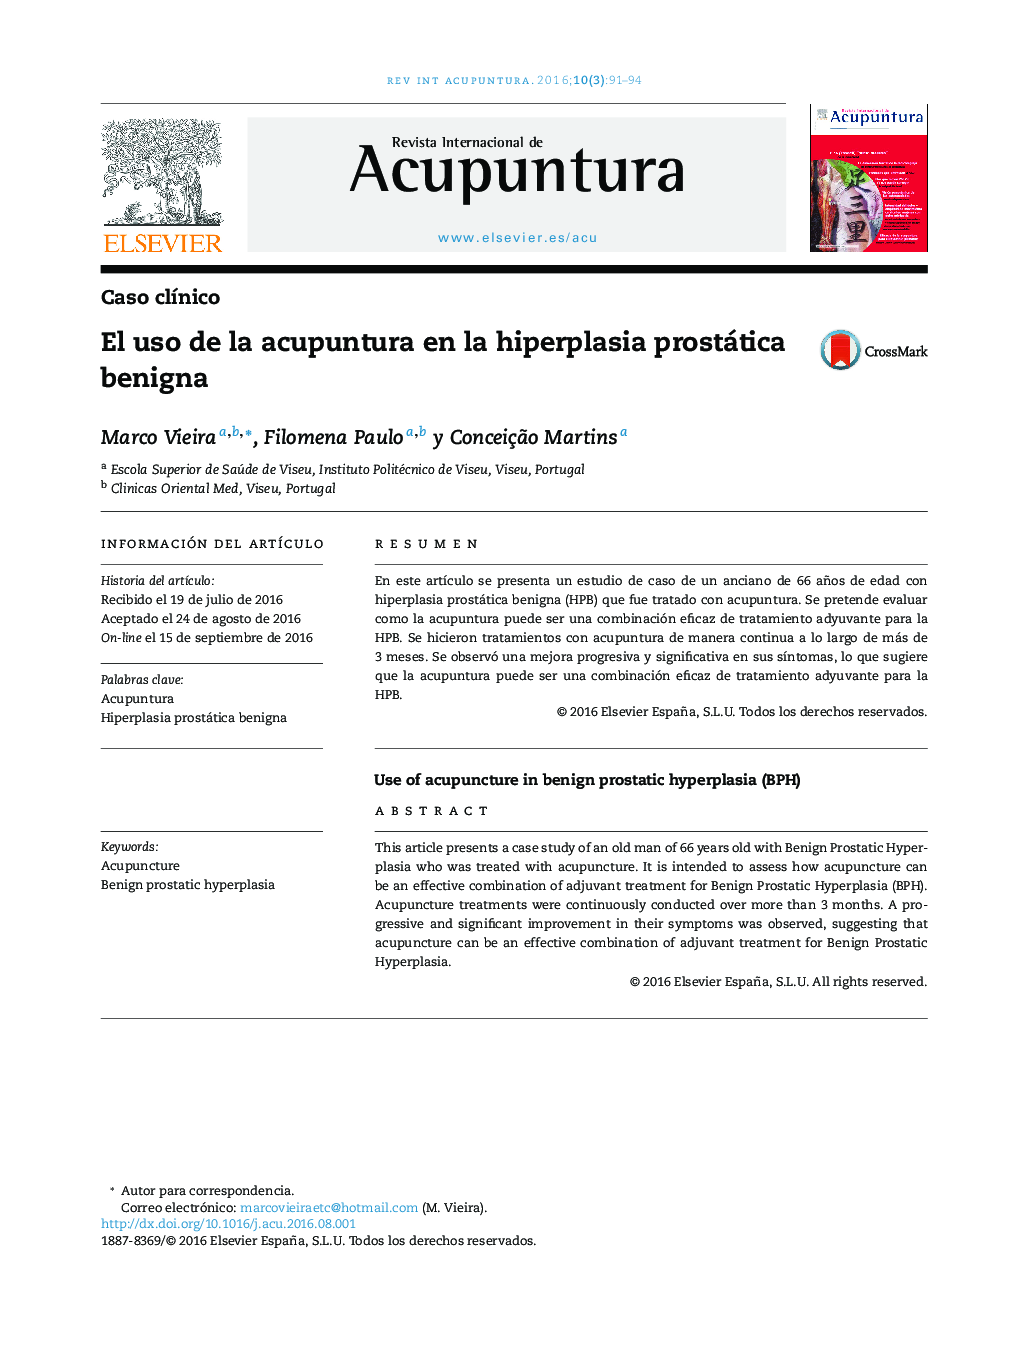 El uso de la acupuntura en la hiperplasia prostática benigna